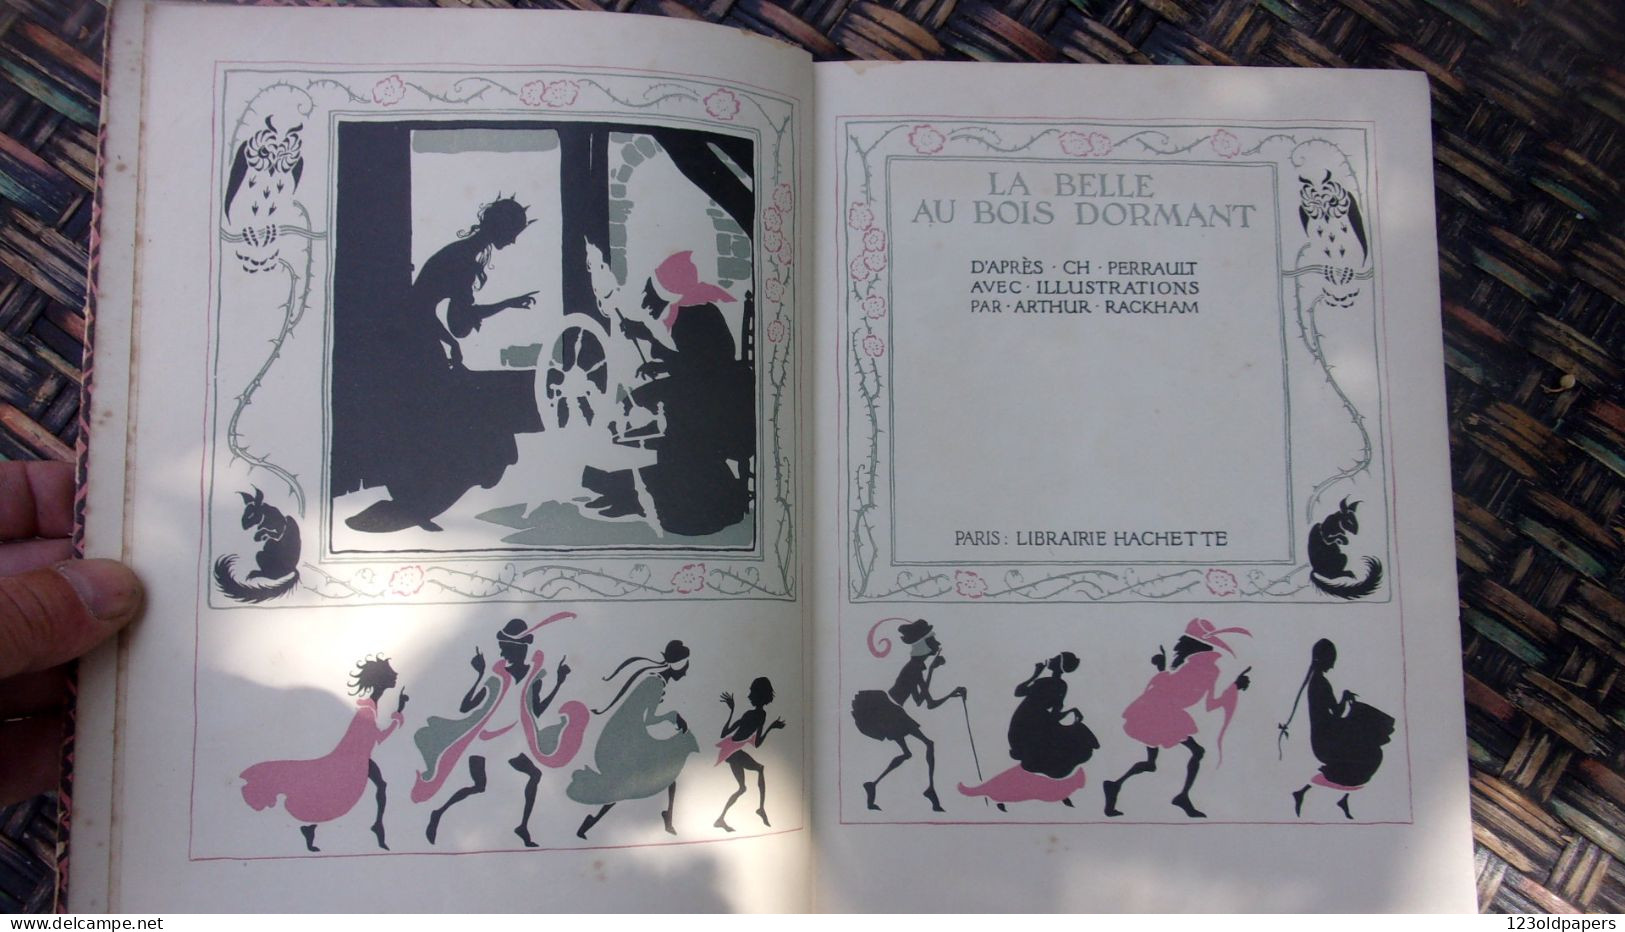 ENFANTINA La belle au bois dormant avec illustrations par Arthur Rackham SANS DATE 1921